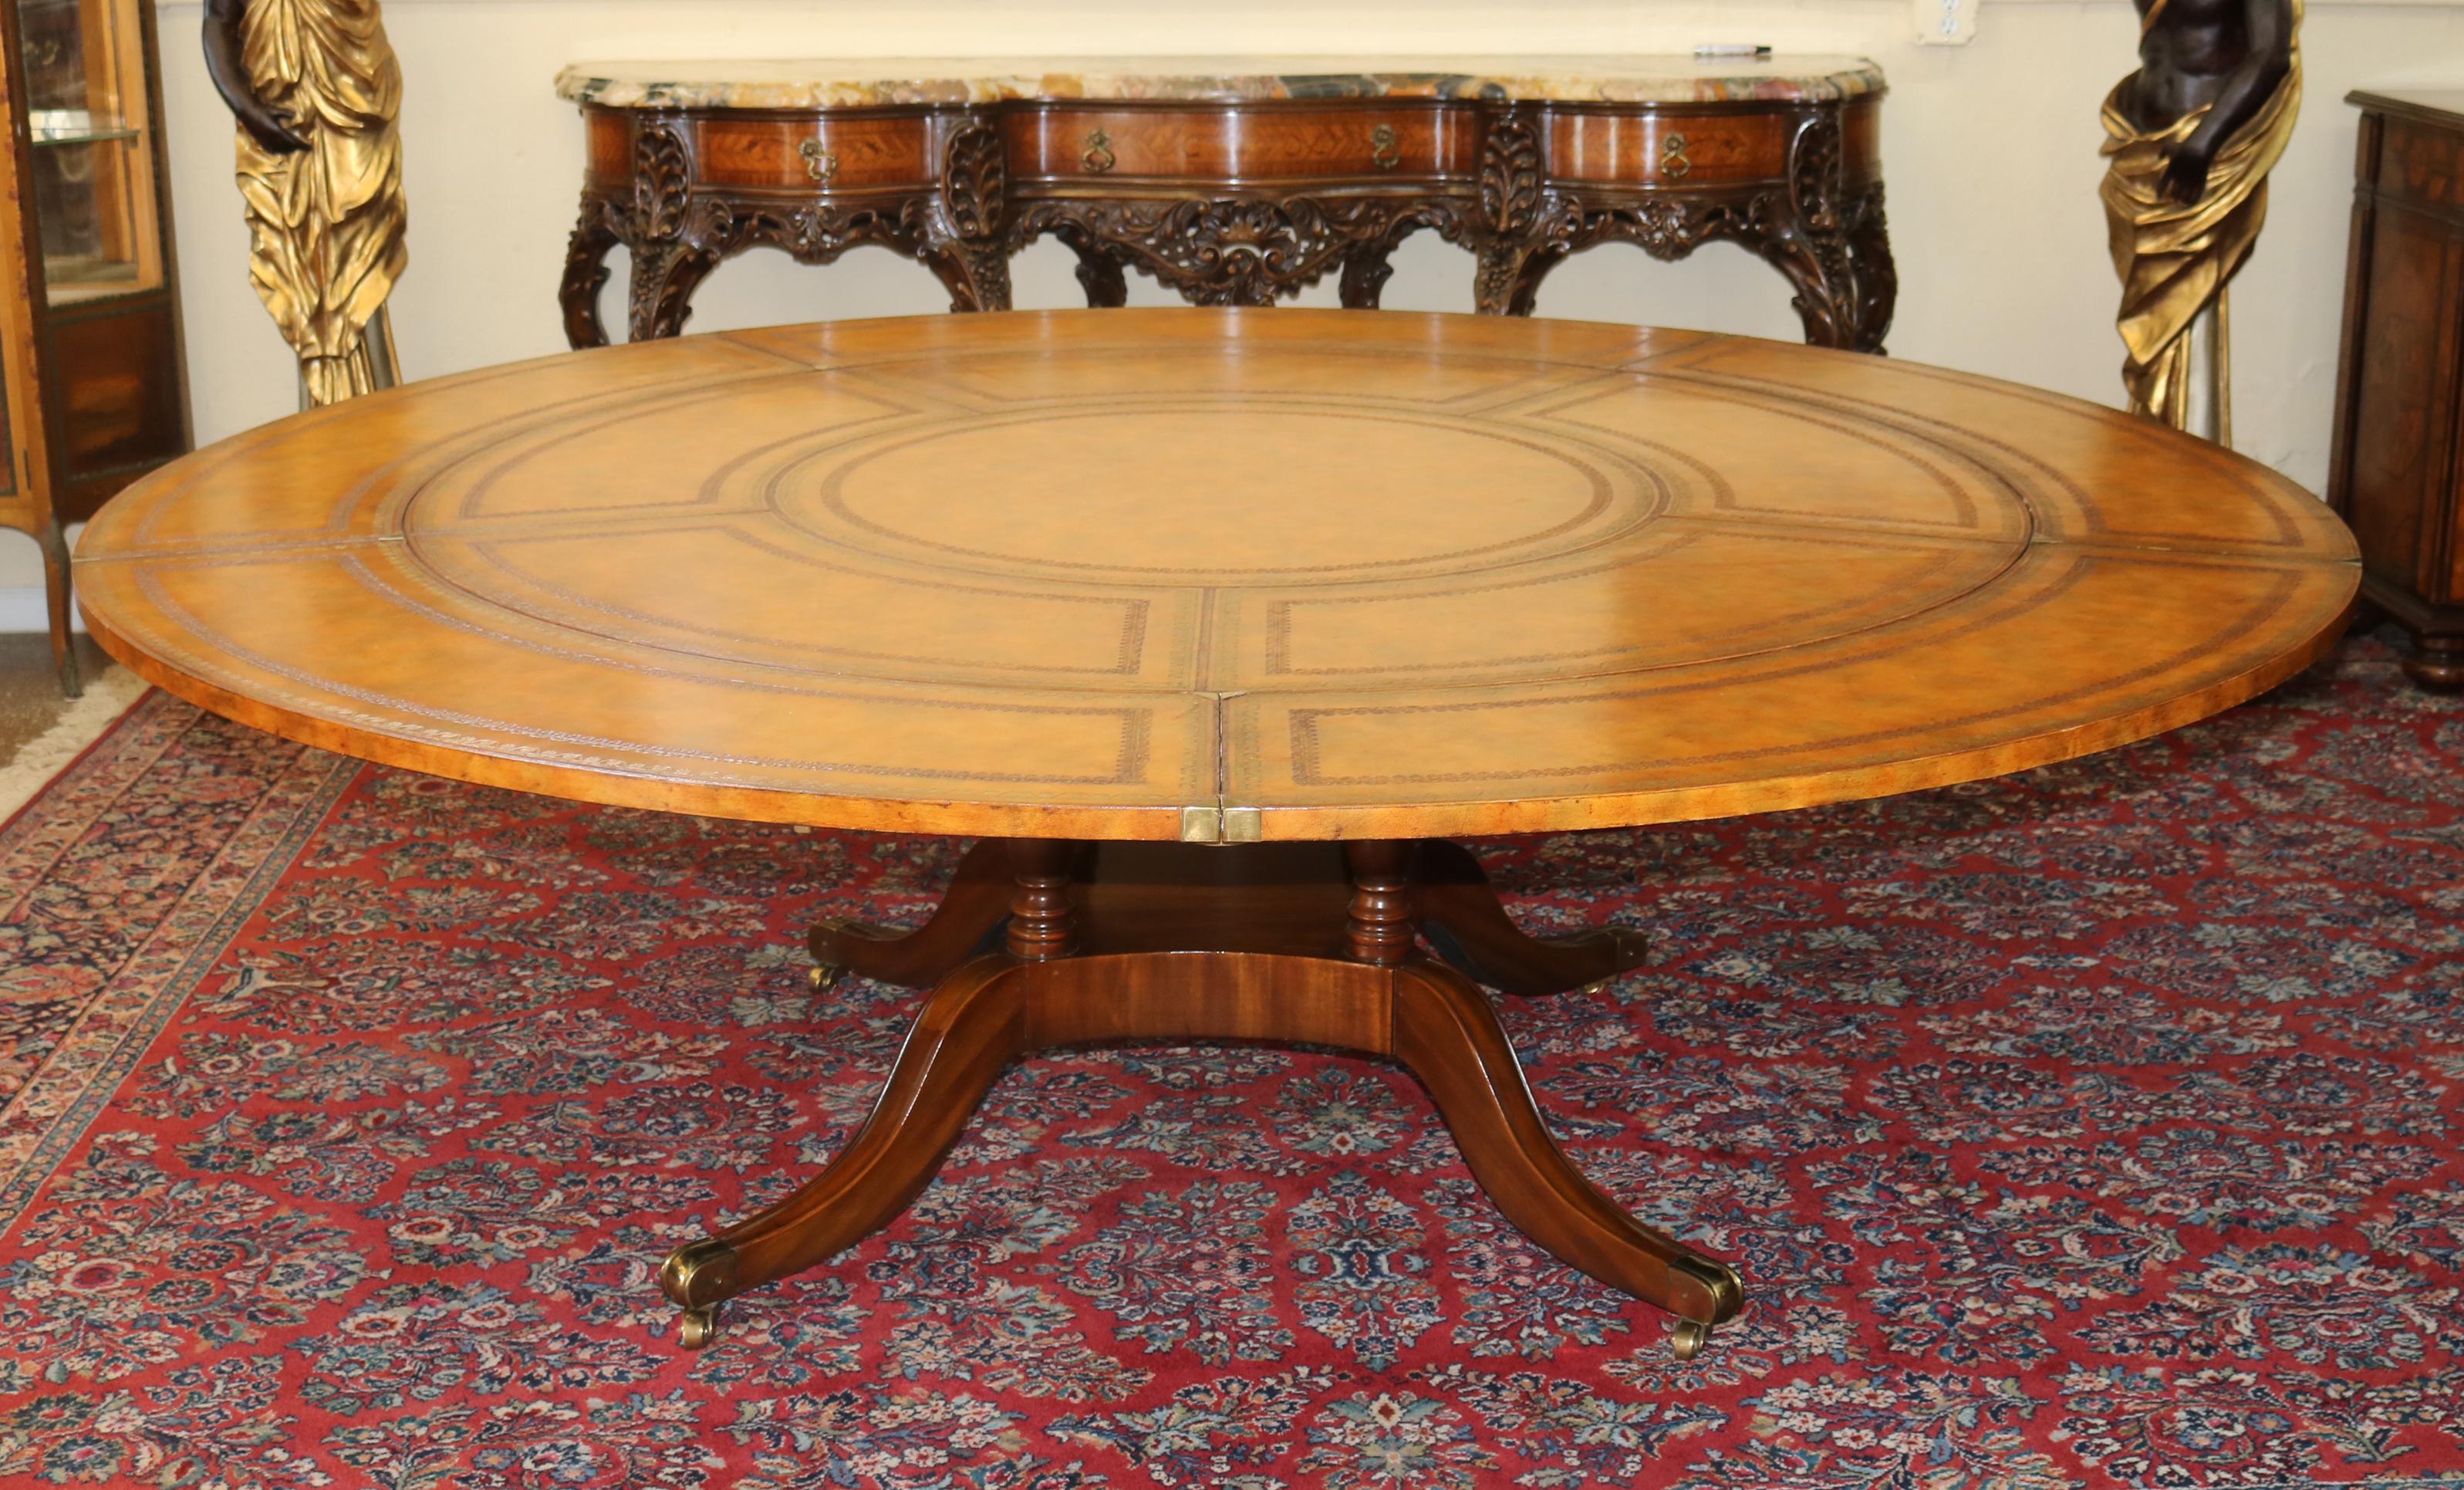 Table périmétrique ronde Maitland Smith en cuir ouvragé de style géorgien

Dimensions : 63.25